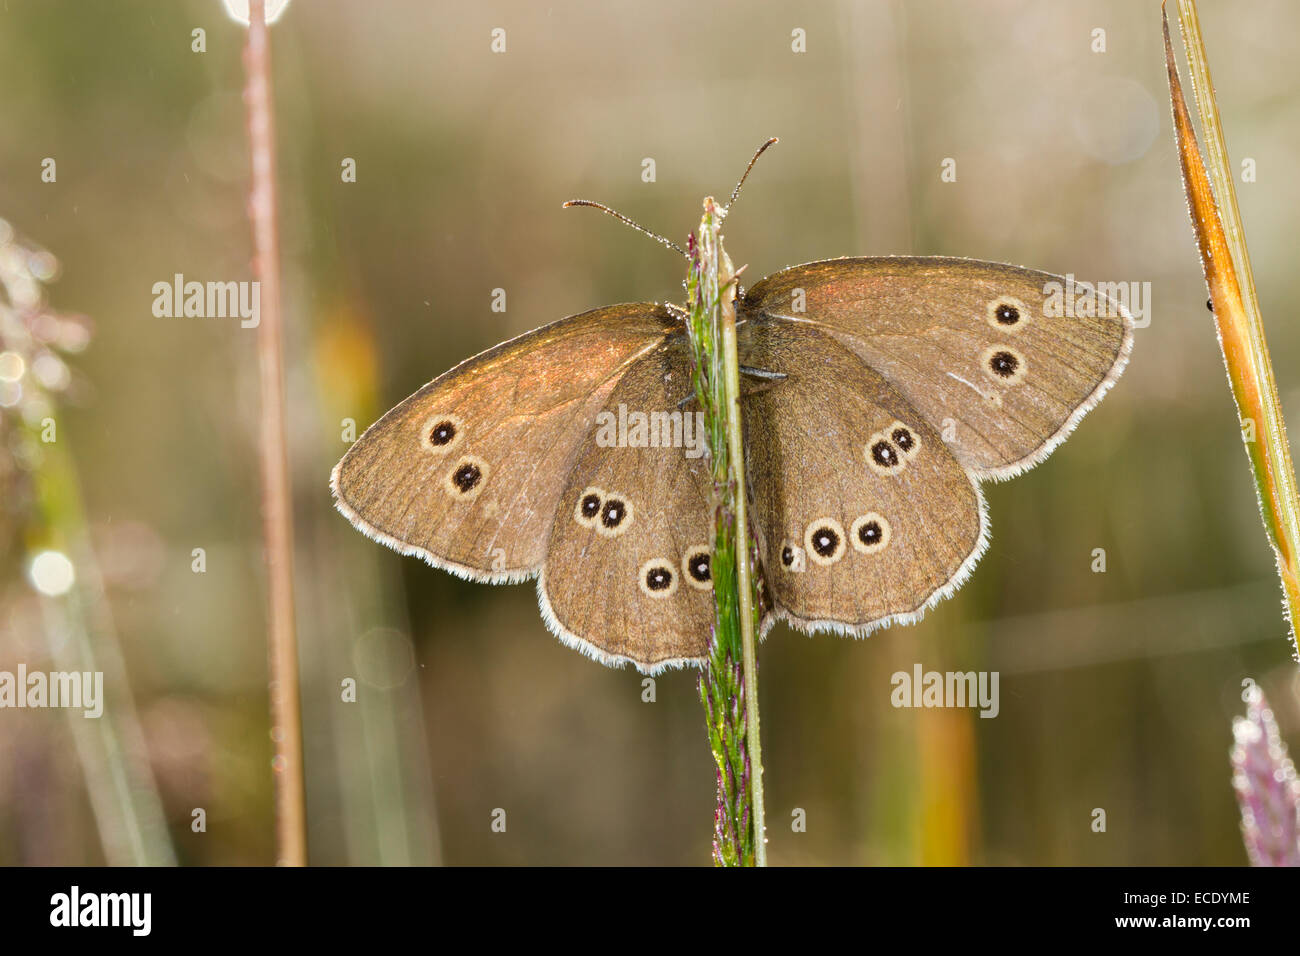 (Un papillon Aphantopus hyperantus) parmi les graminées pèlerins adultes avec les ailes ouvertes. Powys,Pays de Galles. Juillet. Banque D'Images